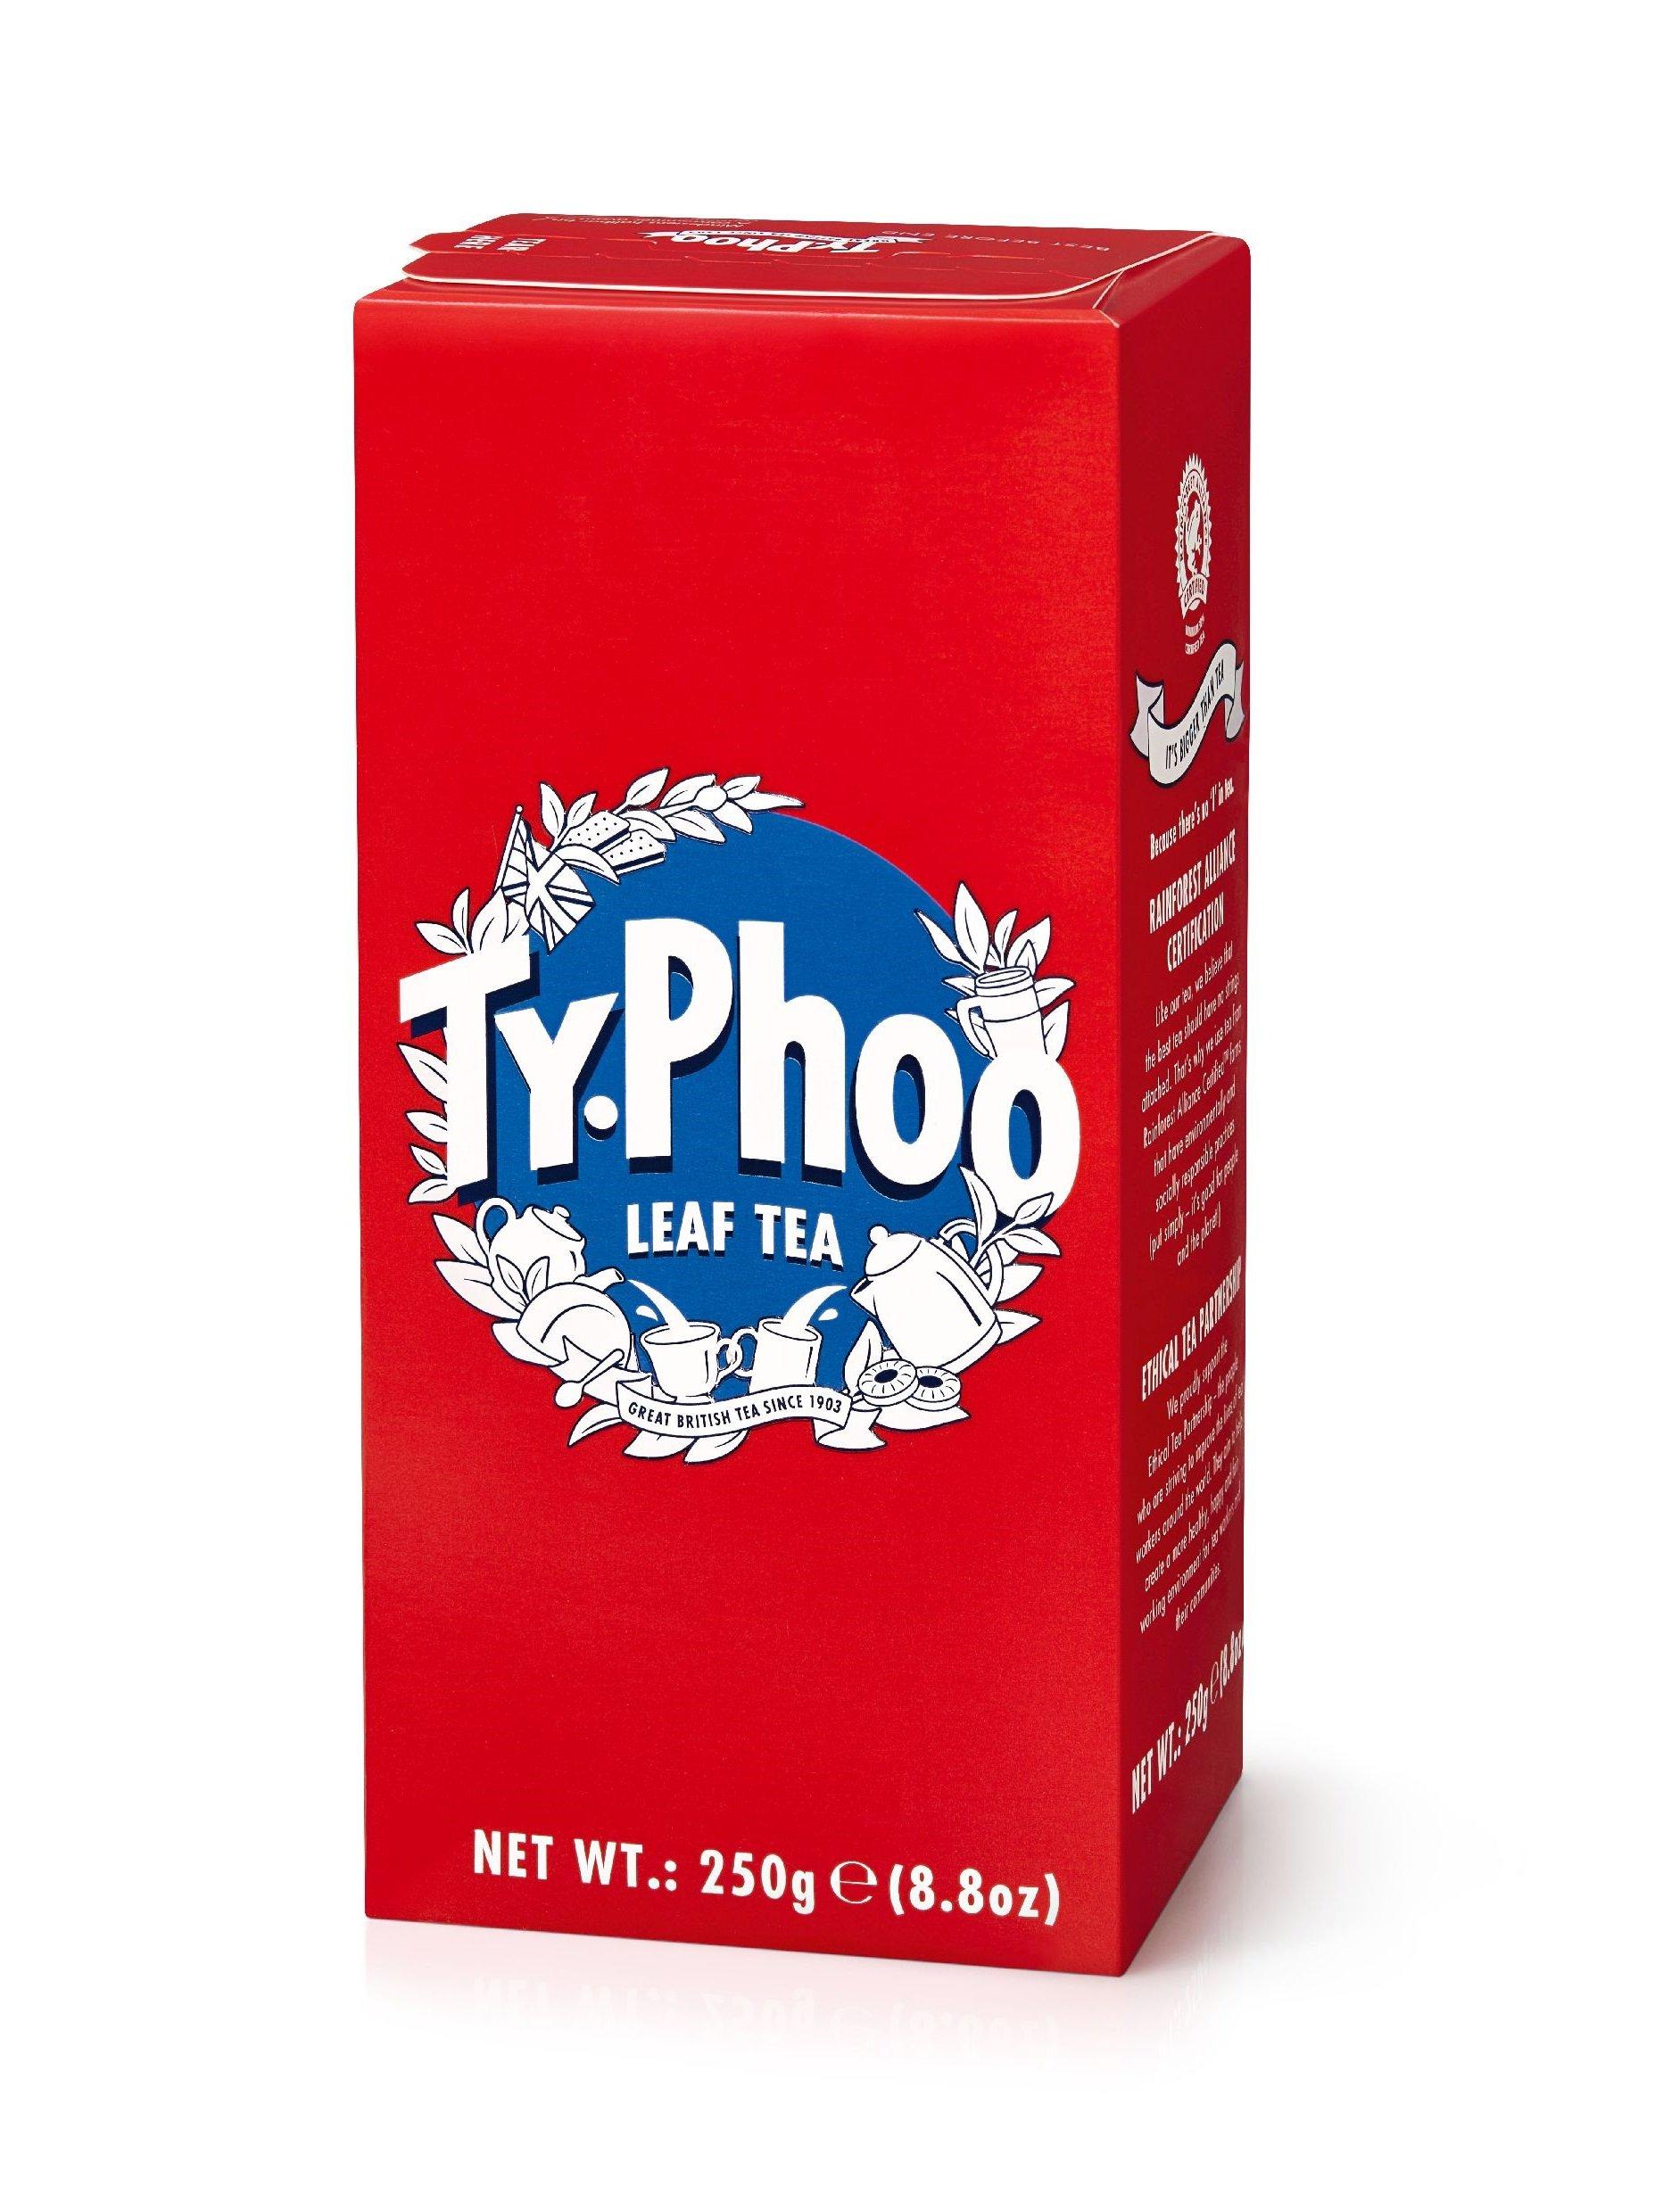 Image of Ty phoo Leaf Tea - 250g